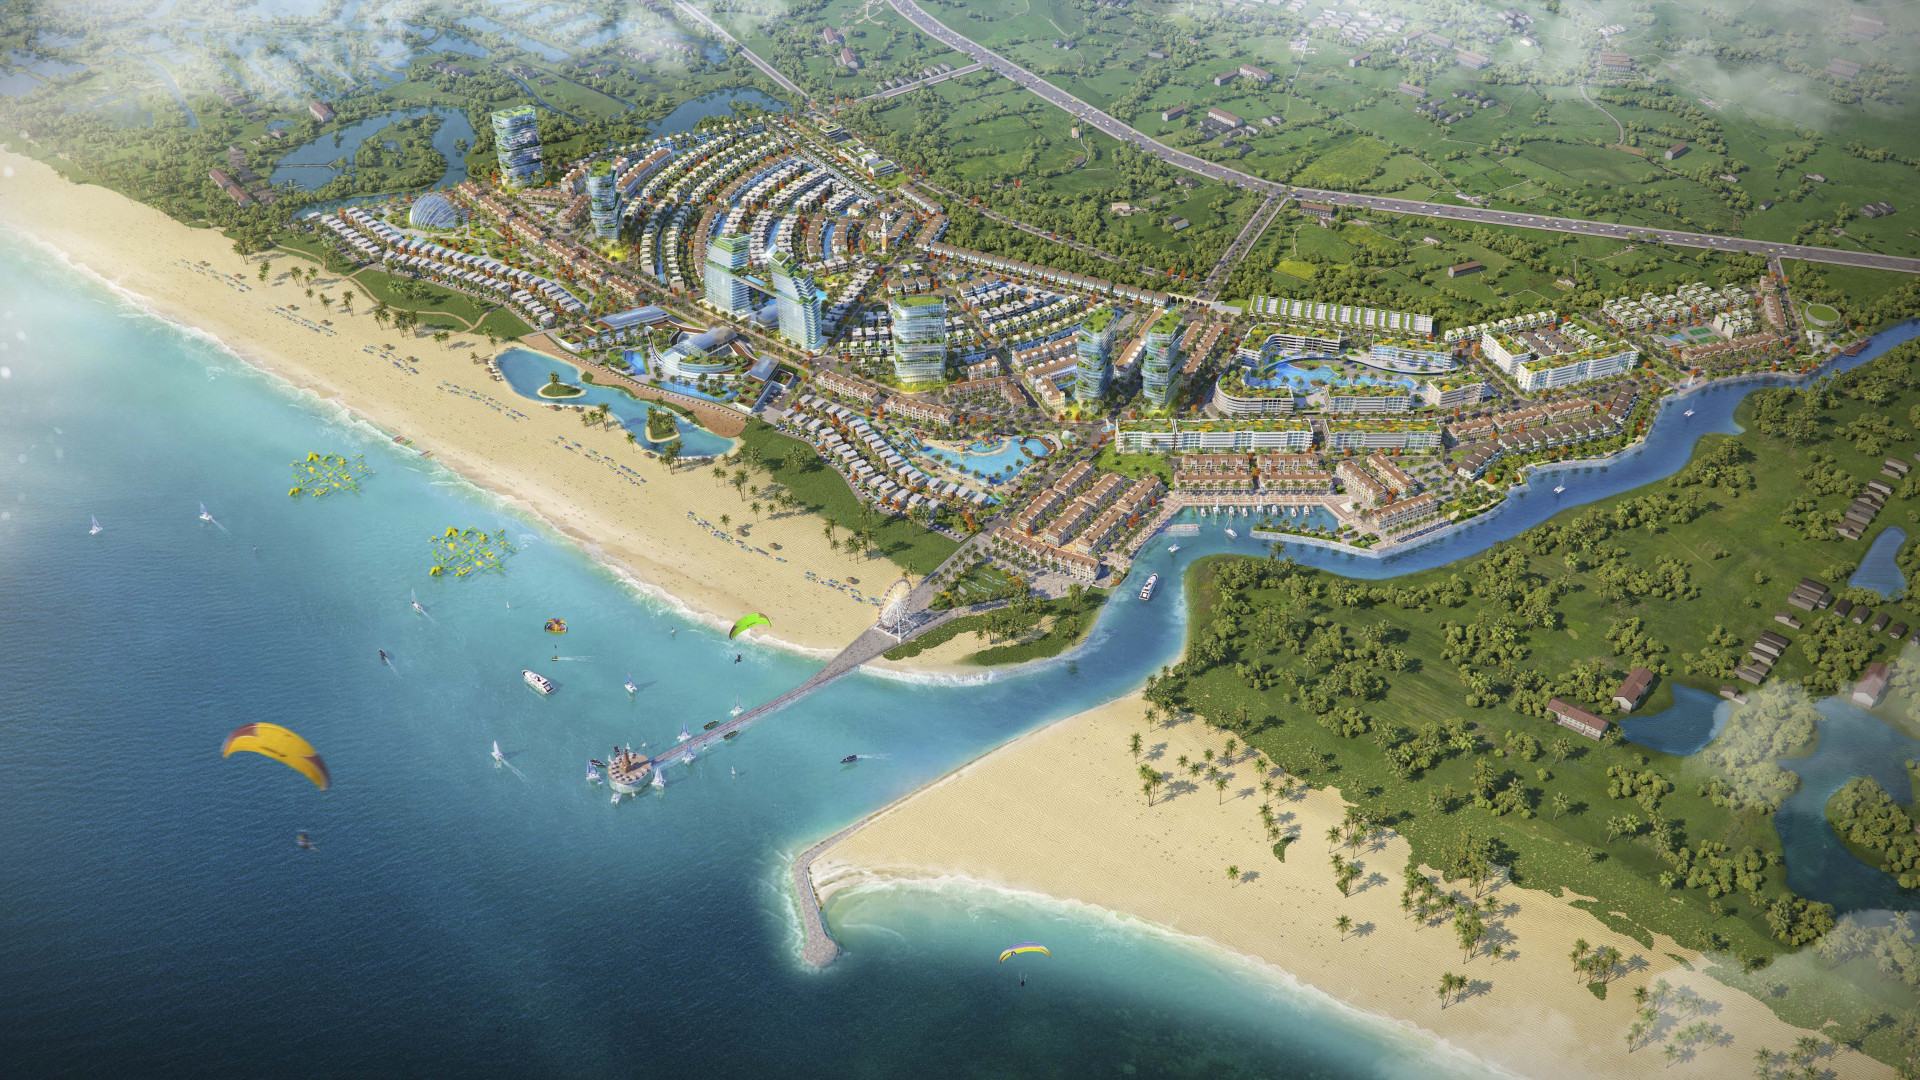 Venezia Beach là tổ hợp thương mại, giải trí, nghỉ dưỡng, và du lịch mang thương hiệu quốc tế 5 sao đẳng cấp tại Hồ Tràm - Bình Châu, có quy mô hơn 72ha, cung cấp ra thị trường 3.979 thương phẩm cao cấp với hơn 90% sản phẩm được sở hữu lâu dài.